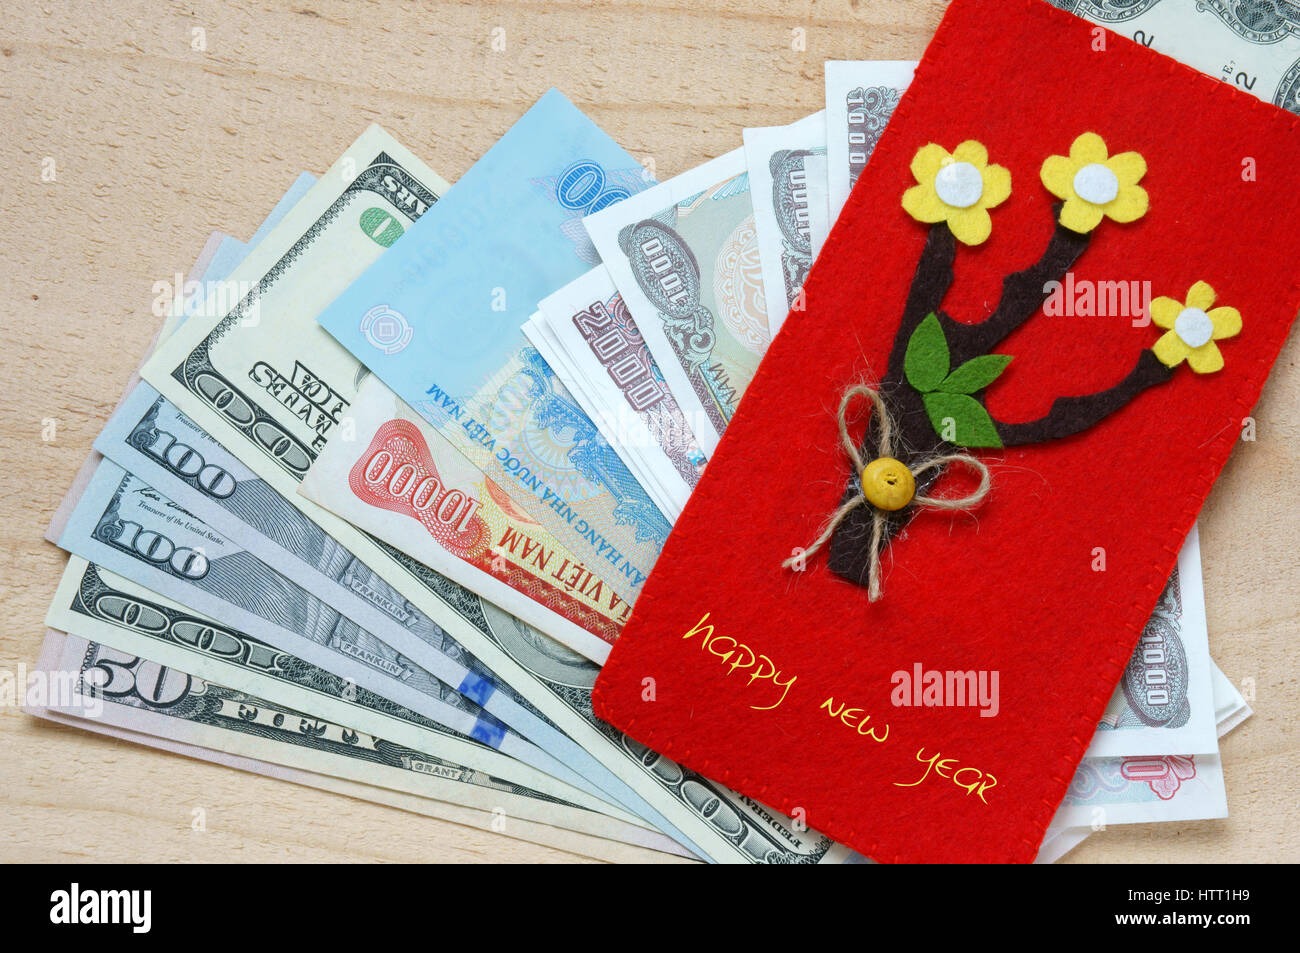 Habitude, coutume de Vietnamiens sur Tet est la chance de l'argent, une culture traditionnelle du Vietnam, enfant voudrais bien que quelqu'un une bonne année, de recevoir l'enveloppe rouge Banque D'Images